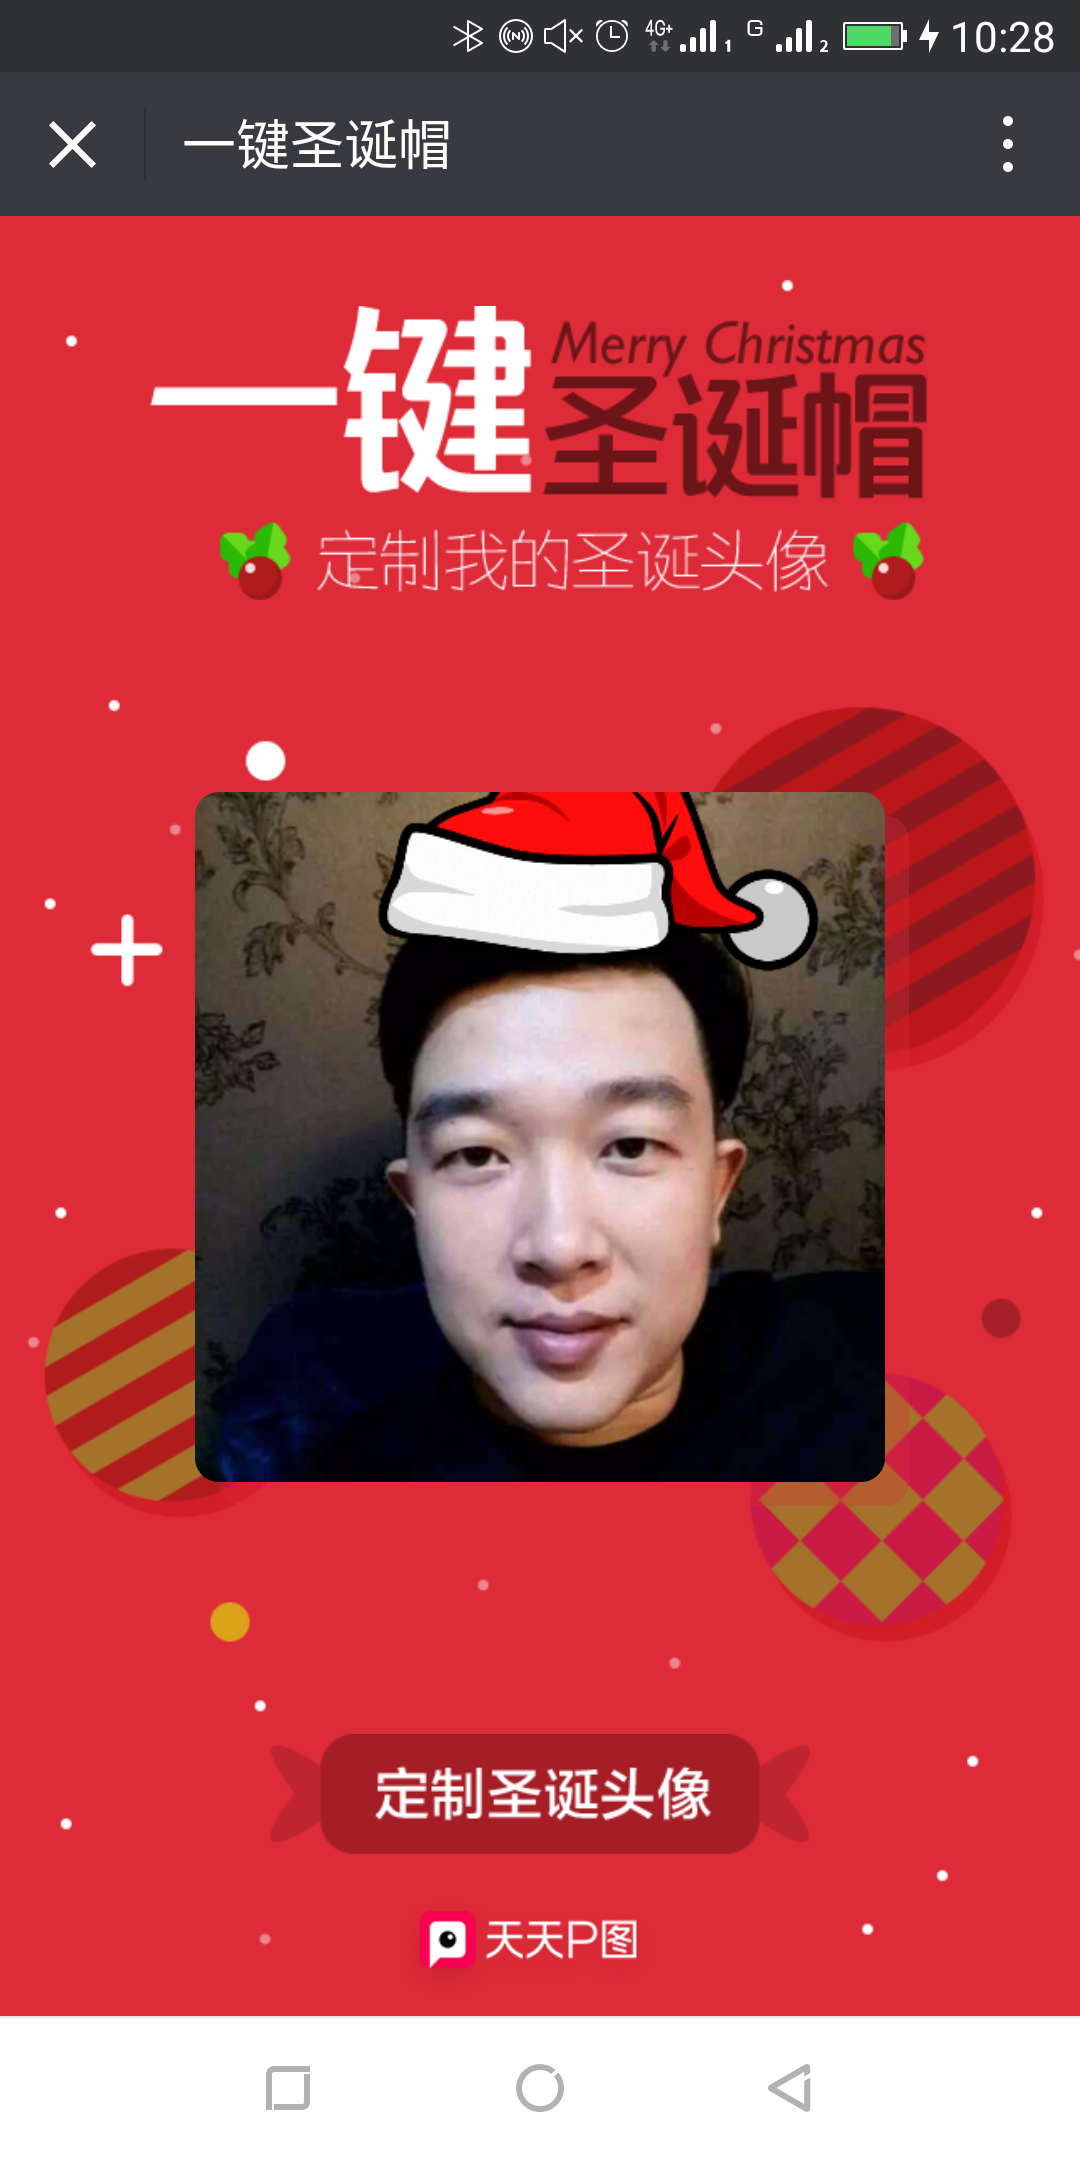 “请给我来一顶圣诞帽@微信官方”的刷屏始末